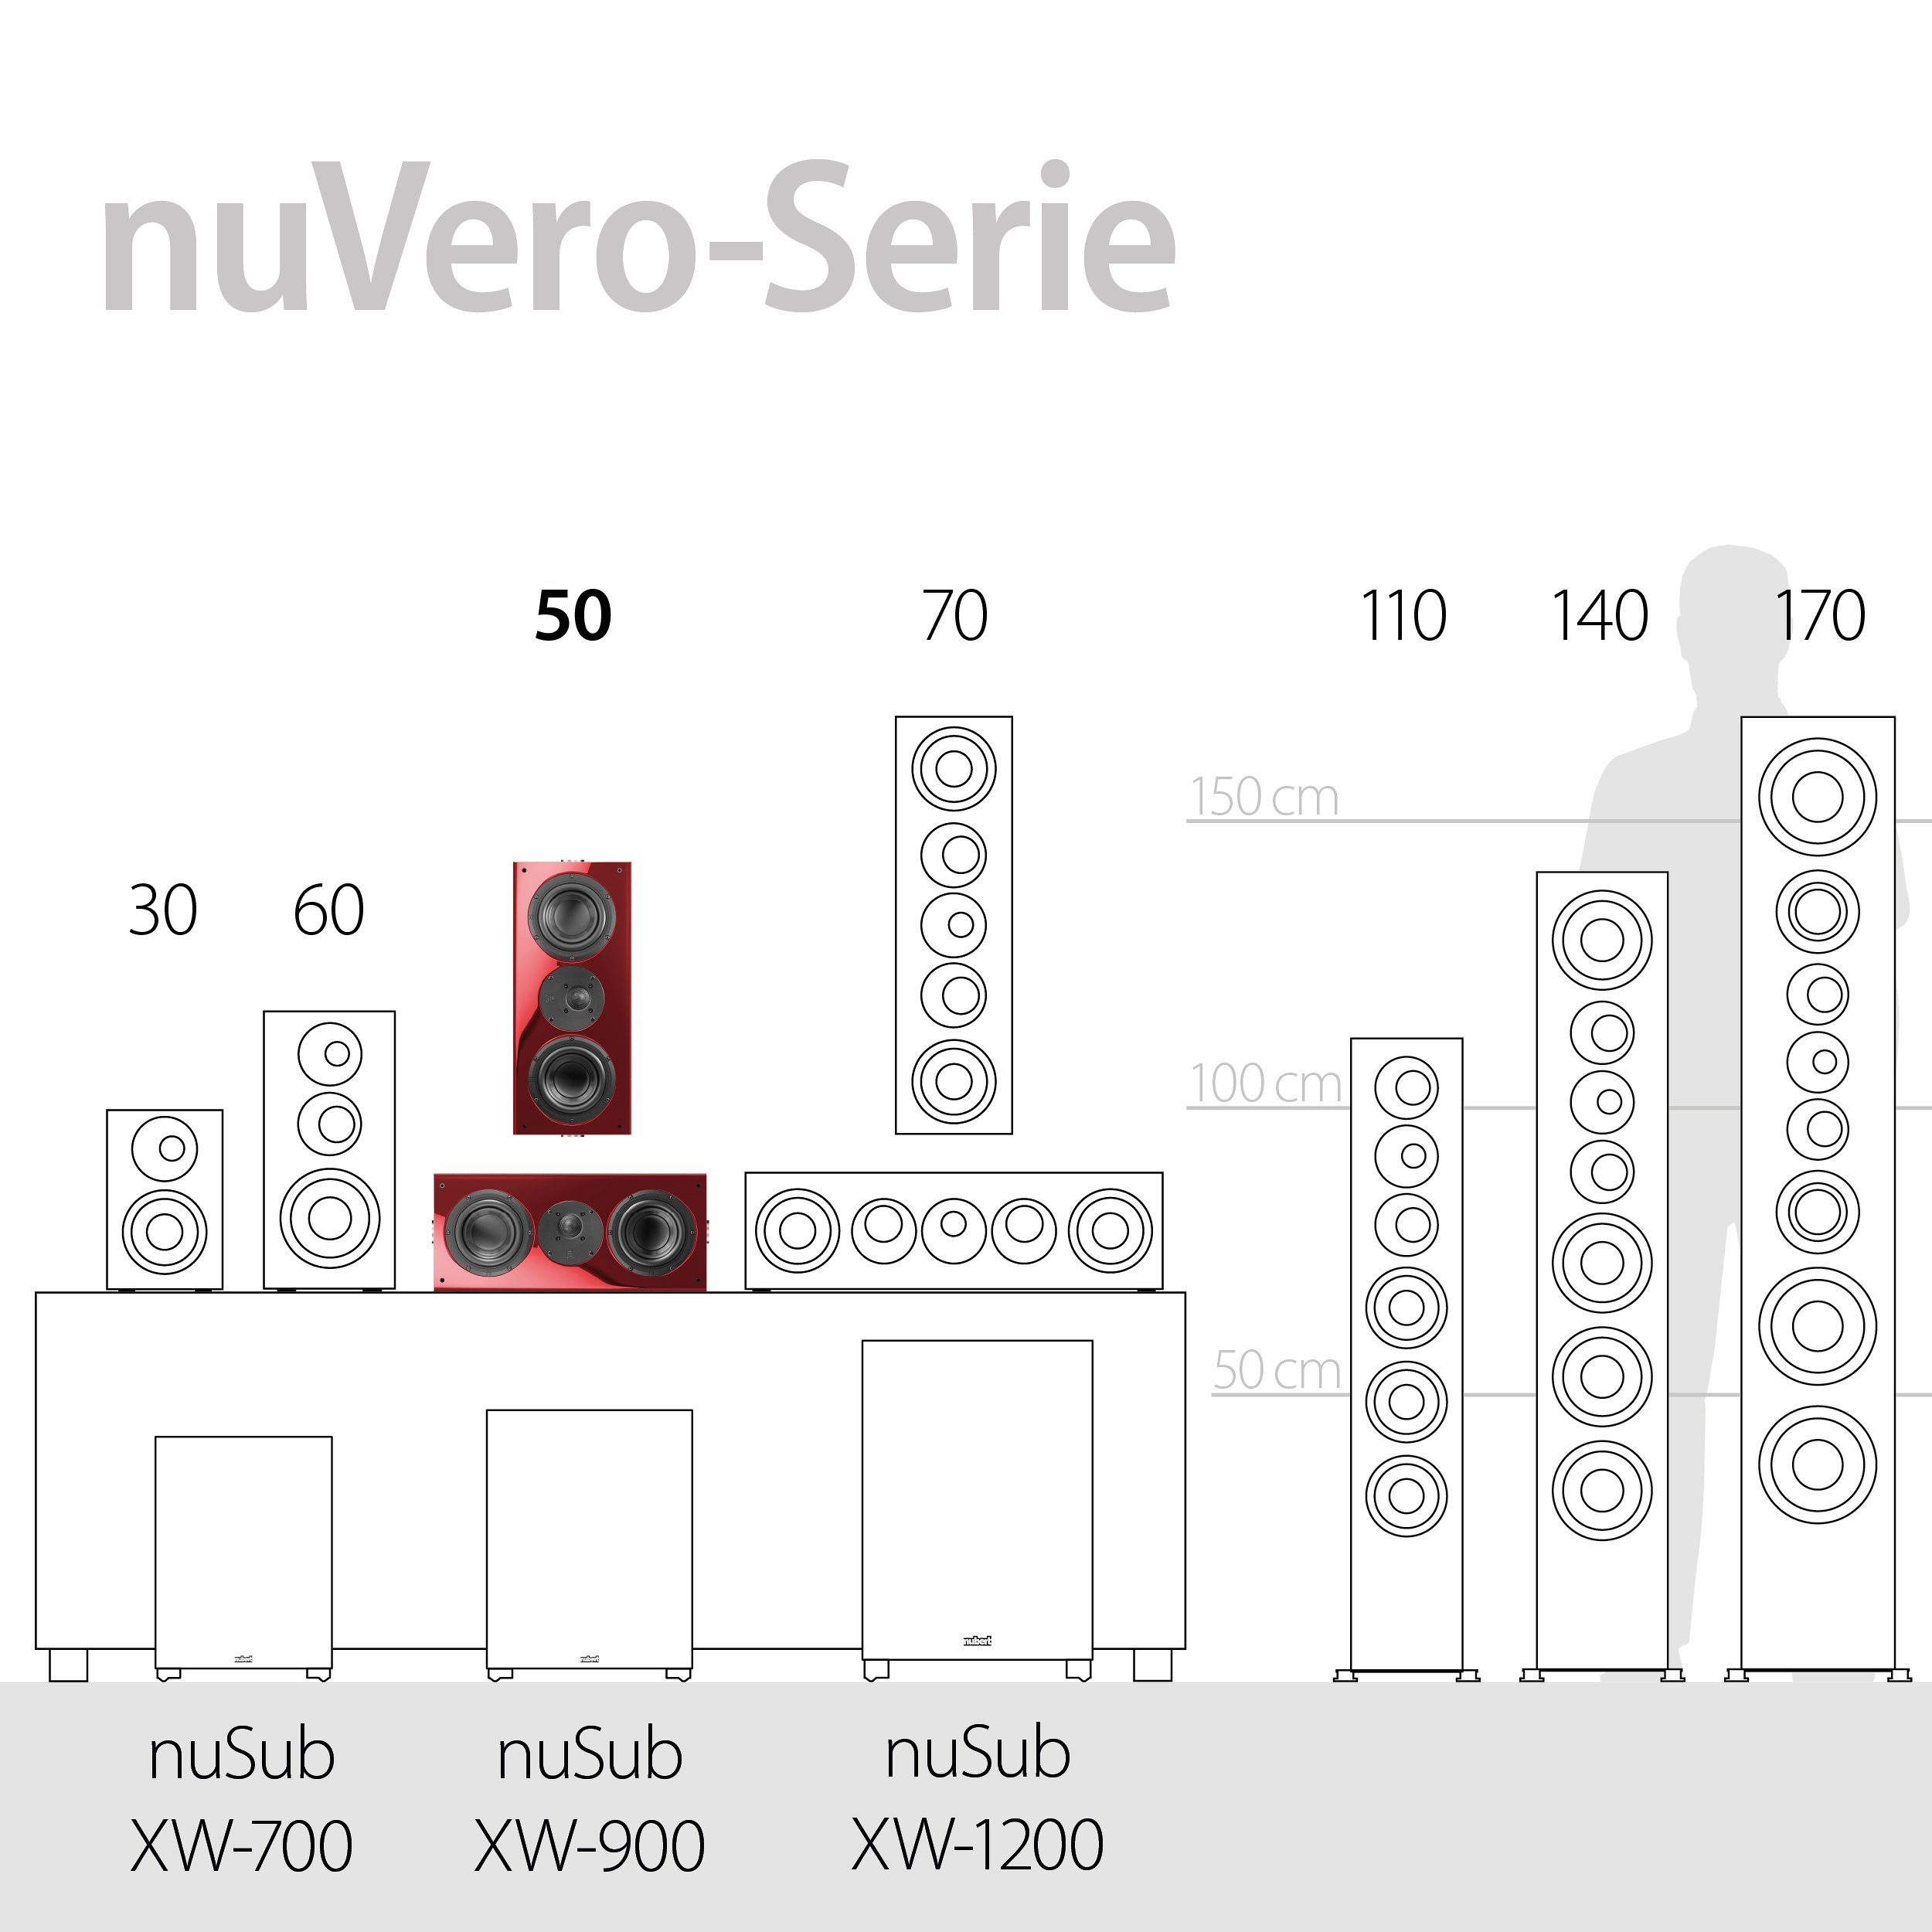 (280 Rubinrot W) Nubert 50 Surround-Lautsprecher nuVero